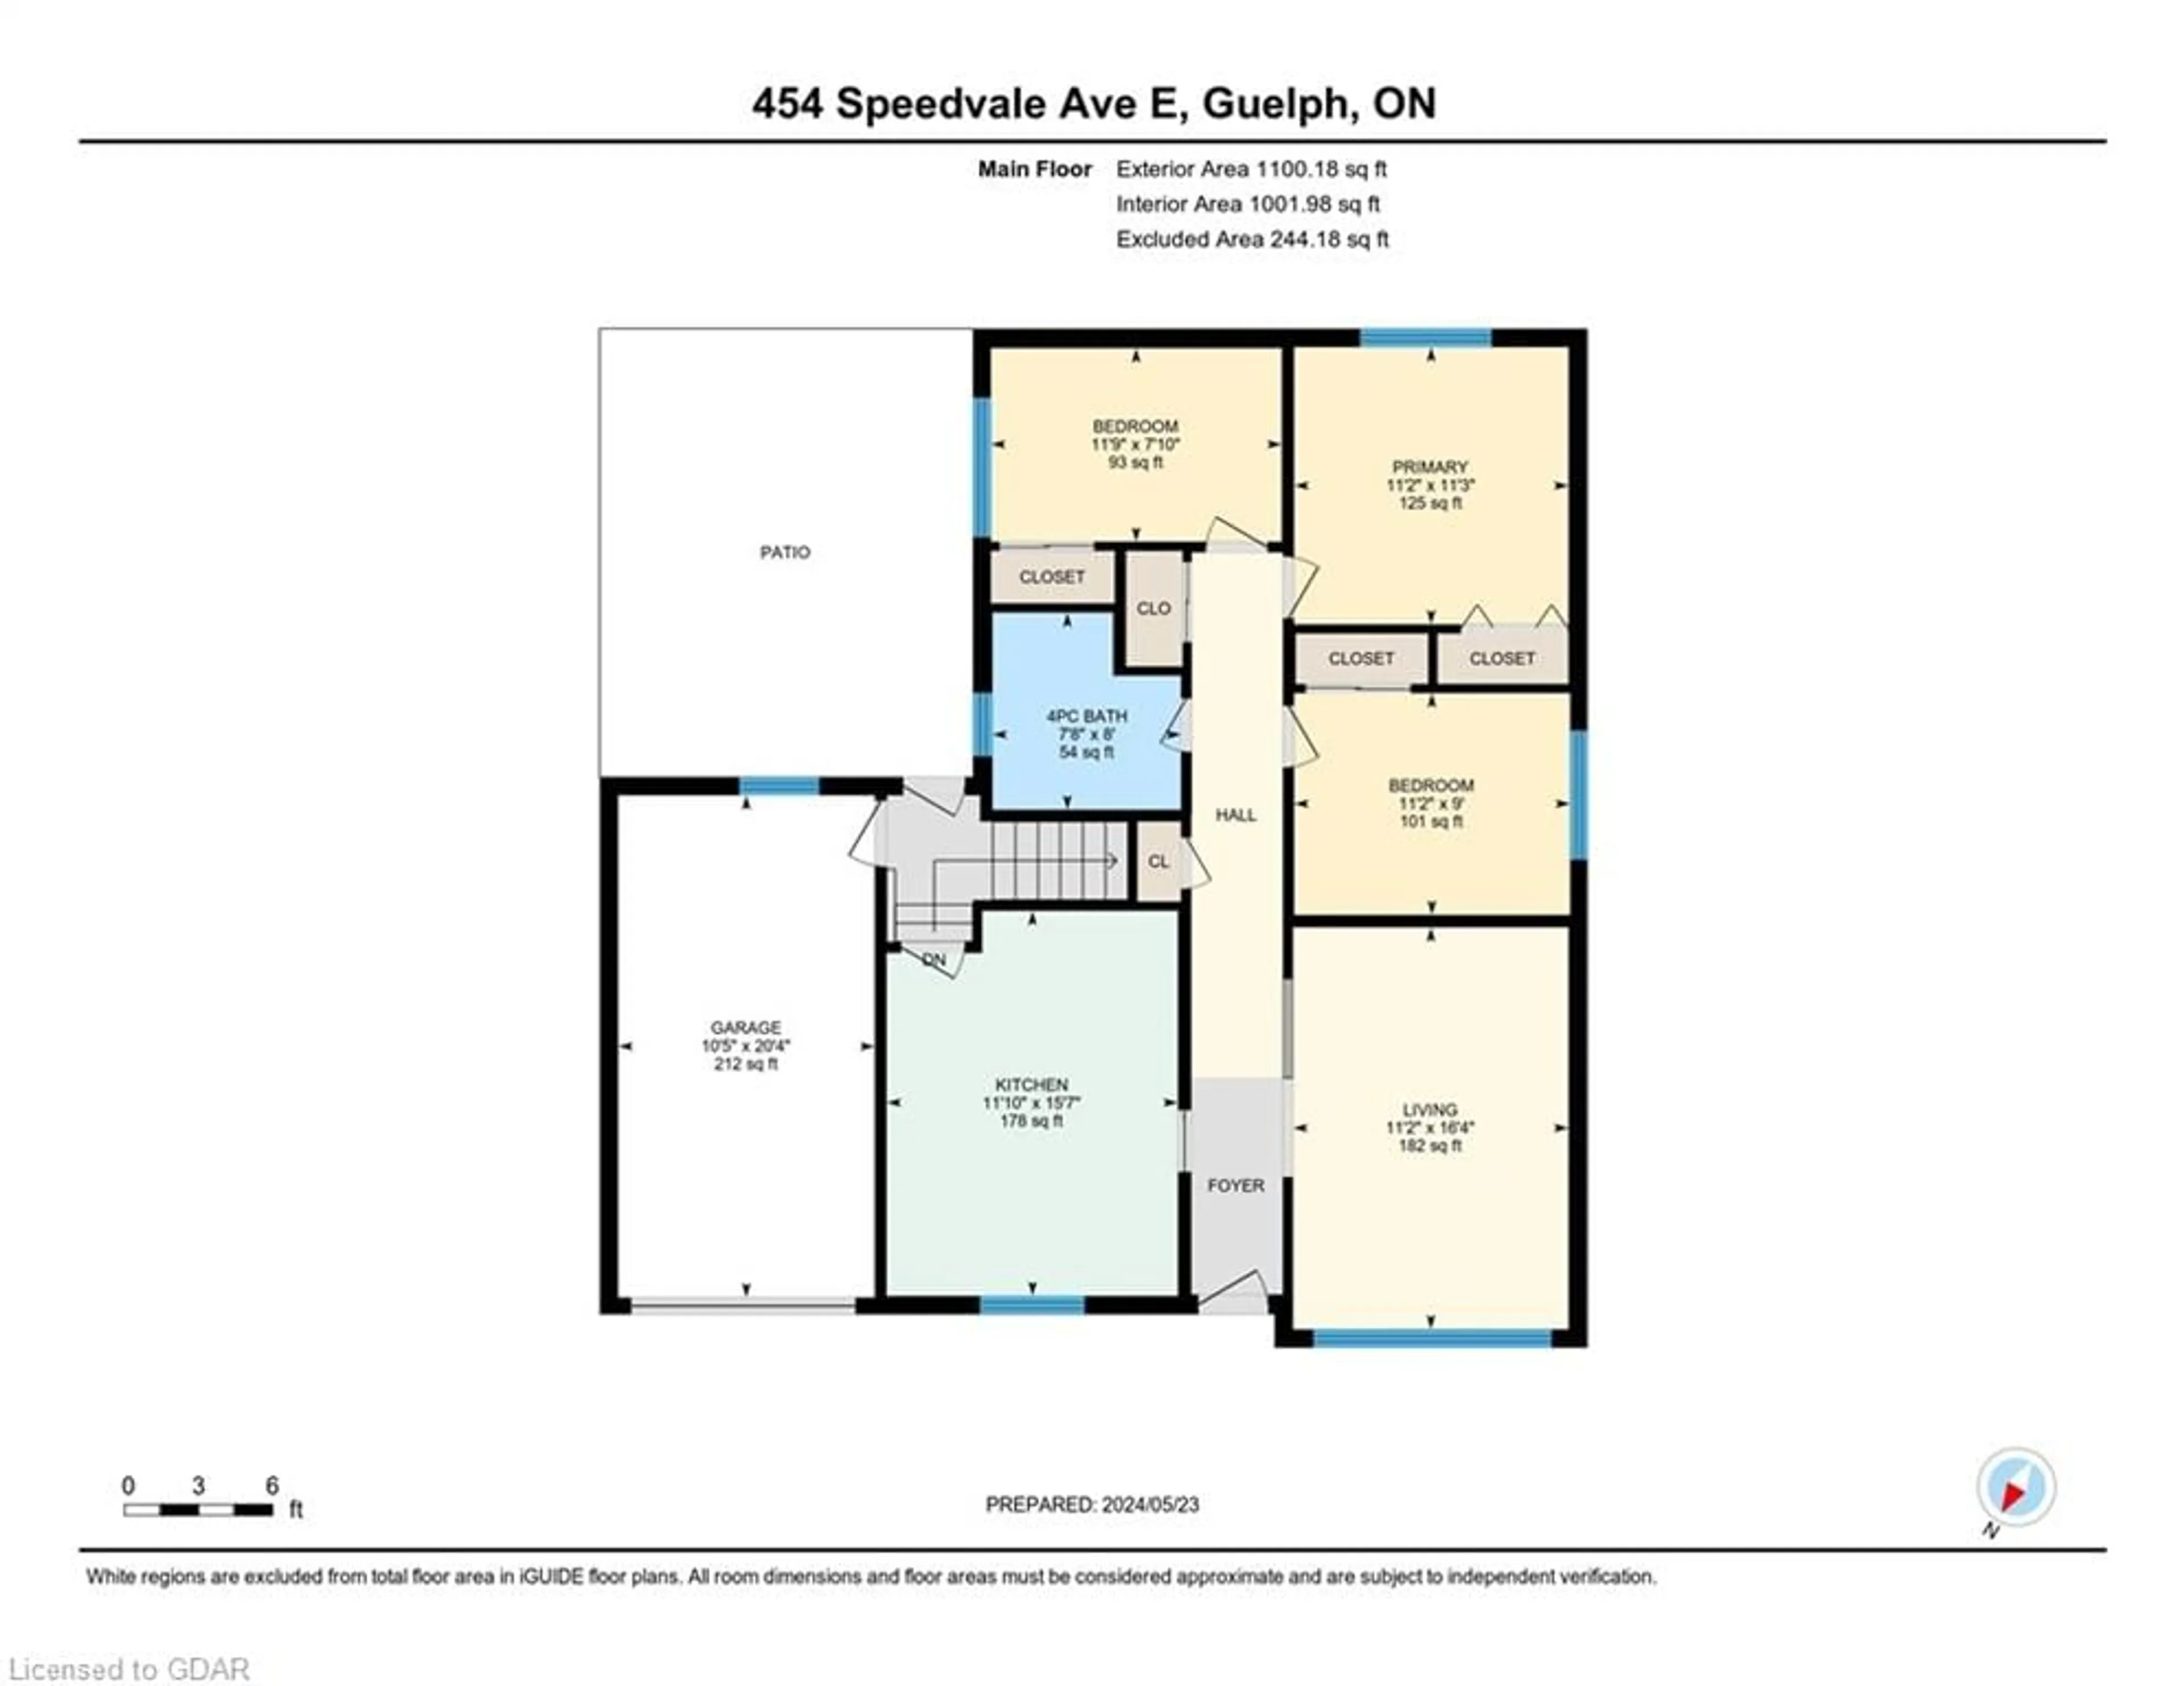 Floor plan for 454 Speedvale Ave, Guelph Ontario N1E 1P1